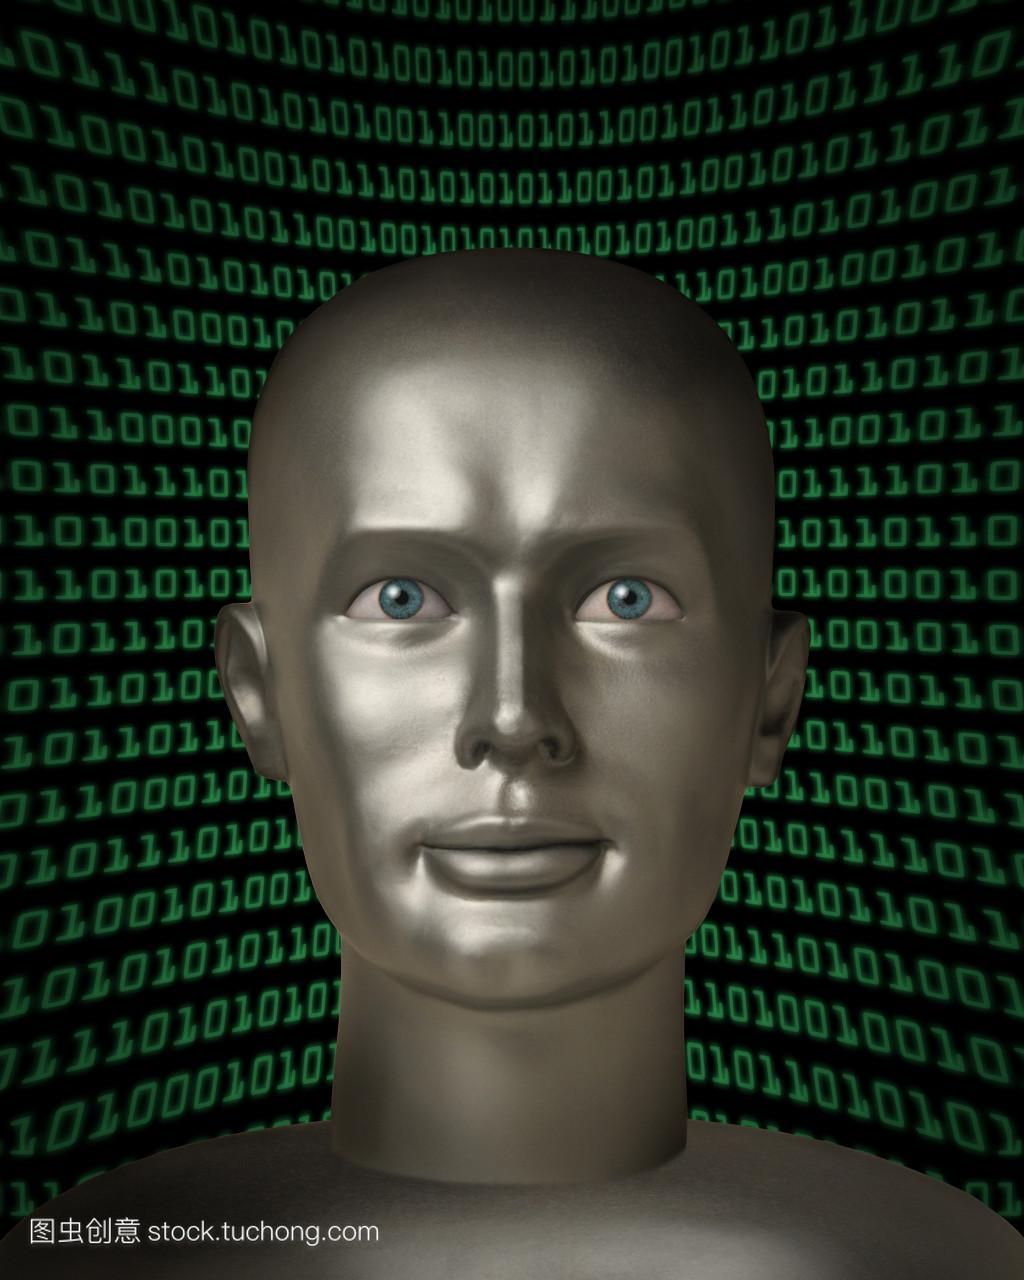 机器人与人类眼睛的二进制代码的字段在 andr